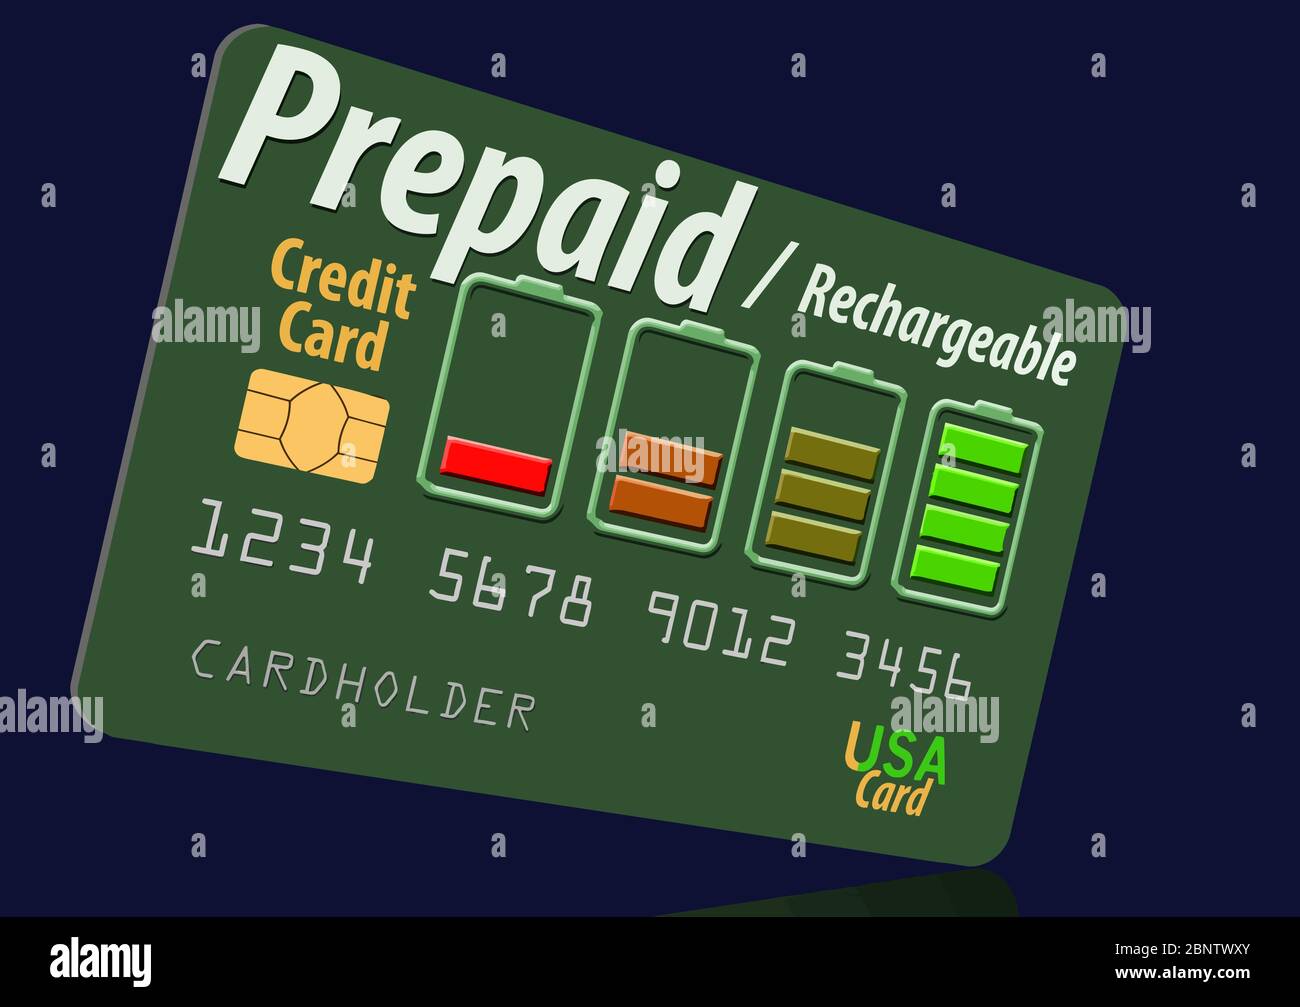 Aquí está una tarjeta de crédito prepagada recargable, recargable. La idea  de recarga se comunica con un indicador de carga de la batería utilizado  como diseño en la tarjeta Imagen Vector de